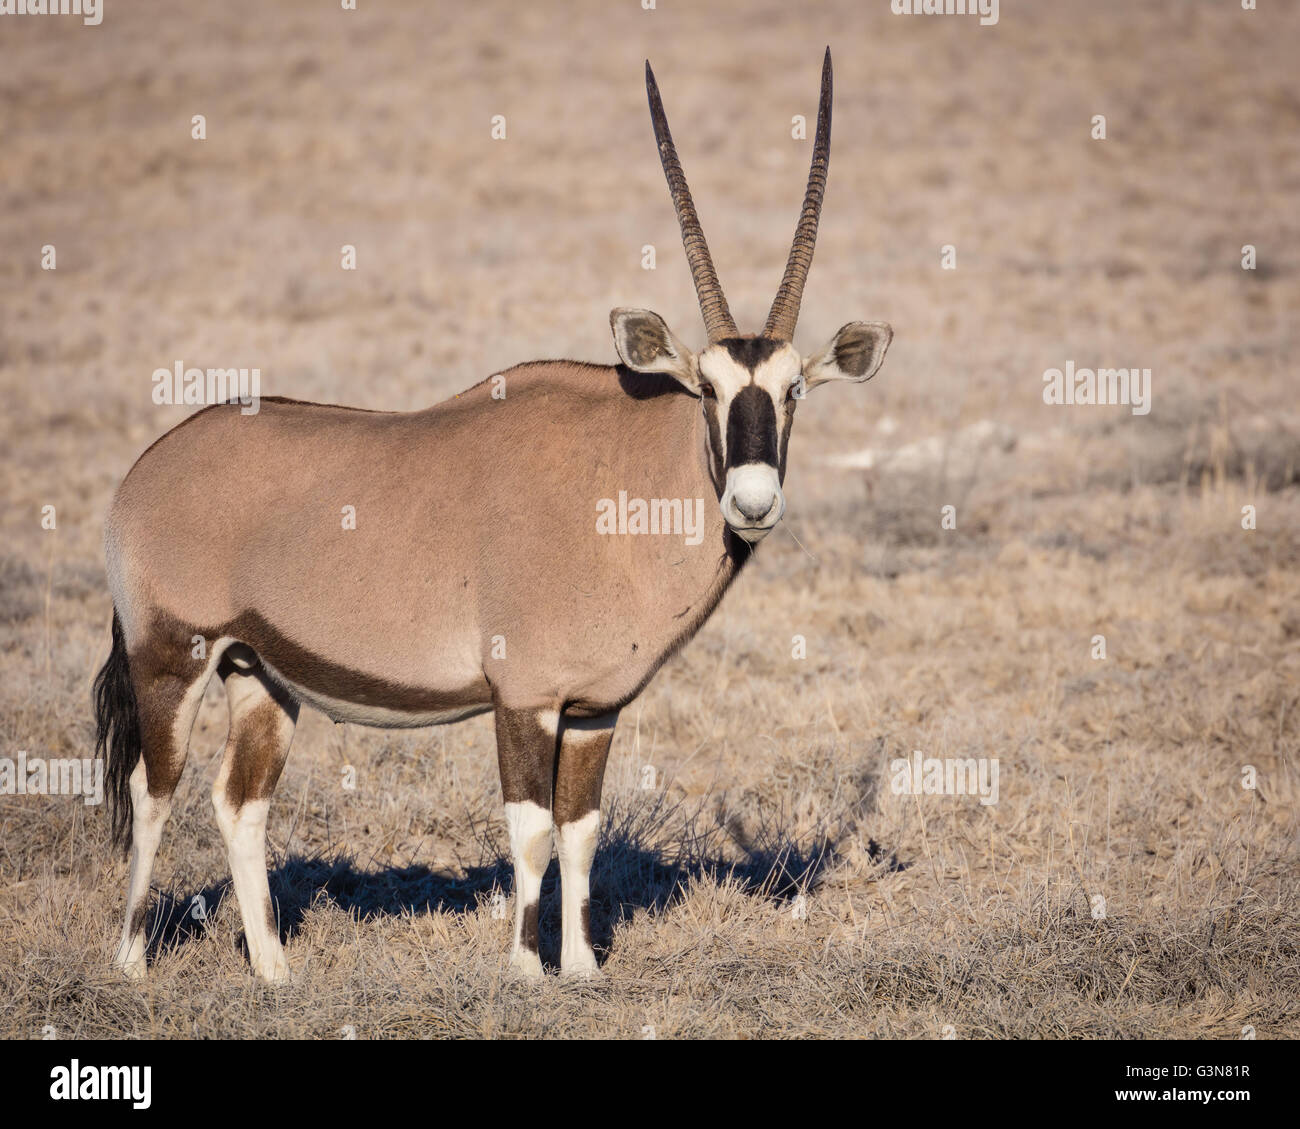 El gemsbuck o gemsbok (Oryx gazella) es un gran antílope oryx en el género Foto de stock